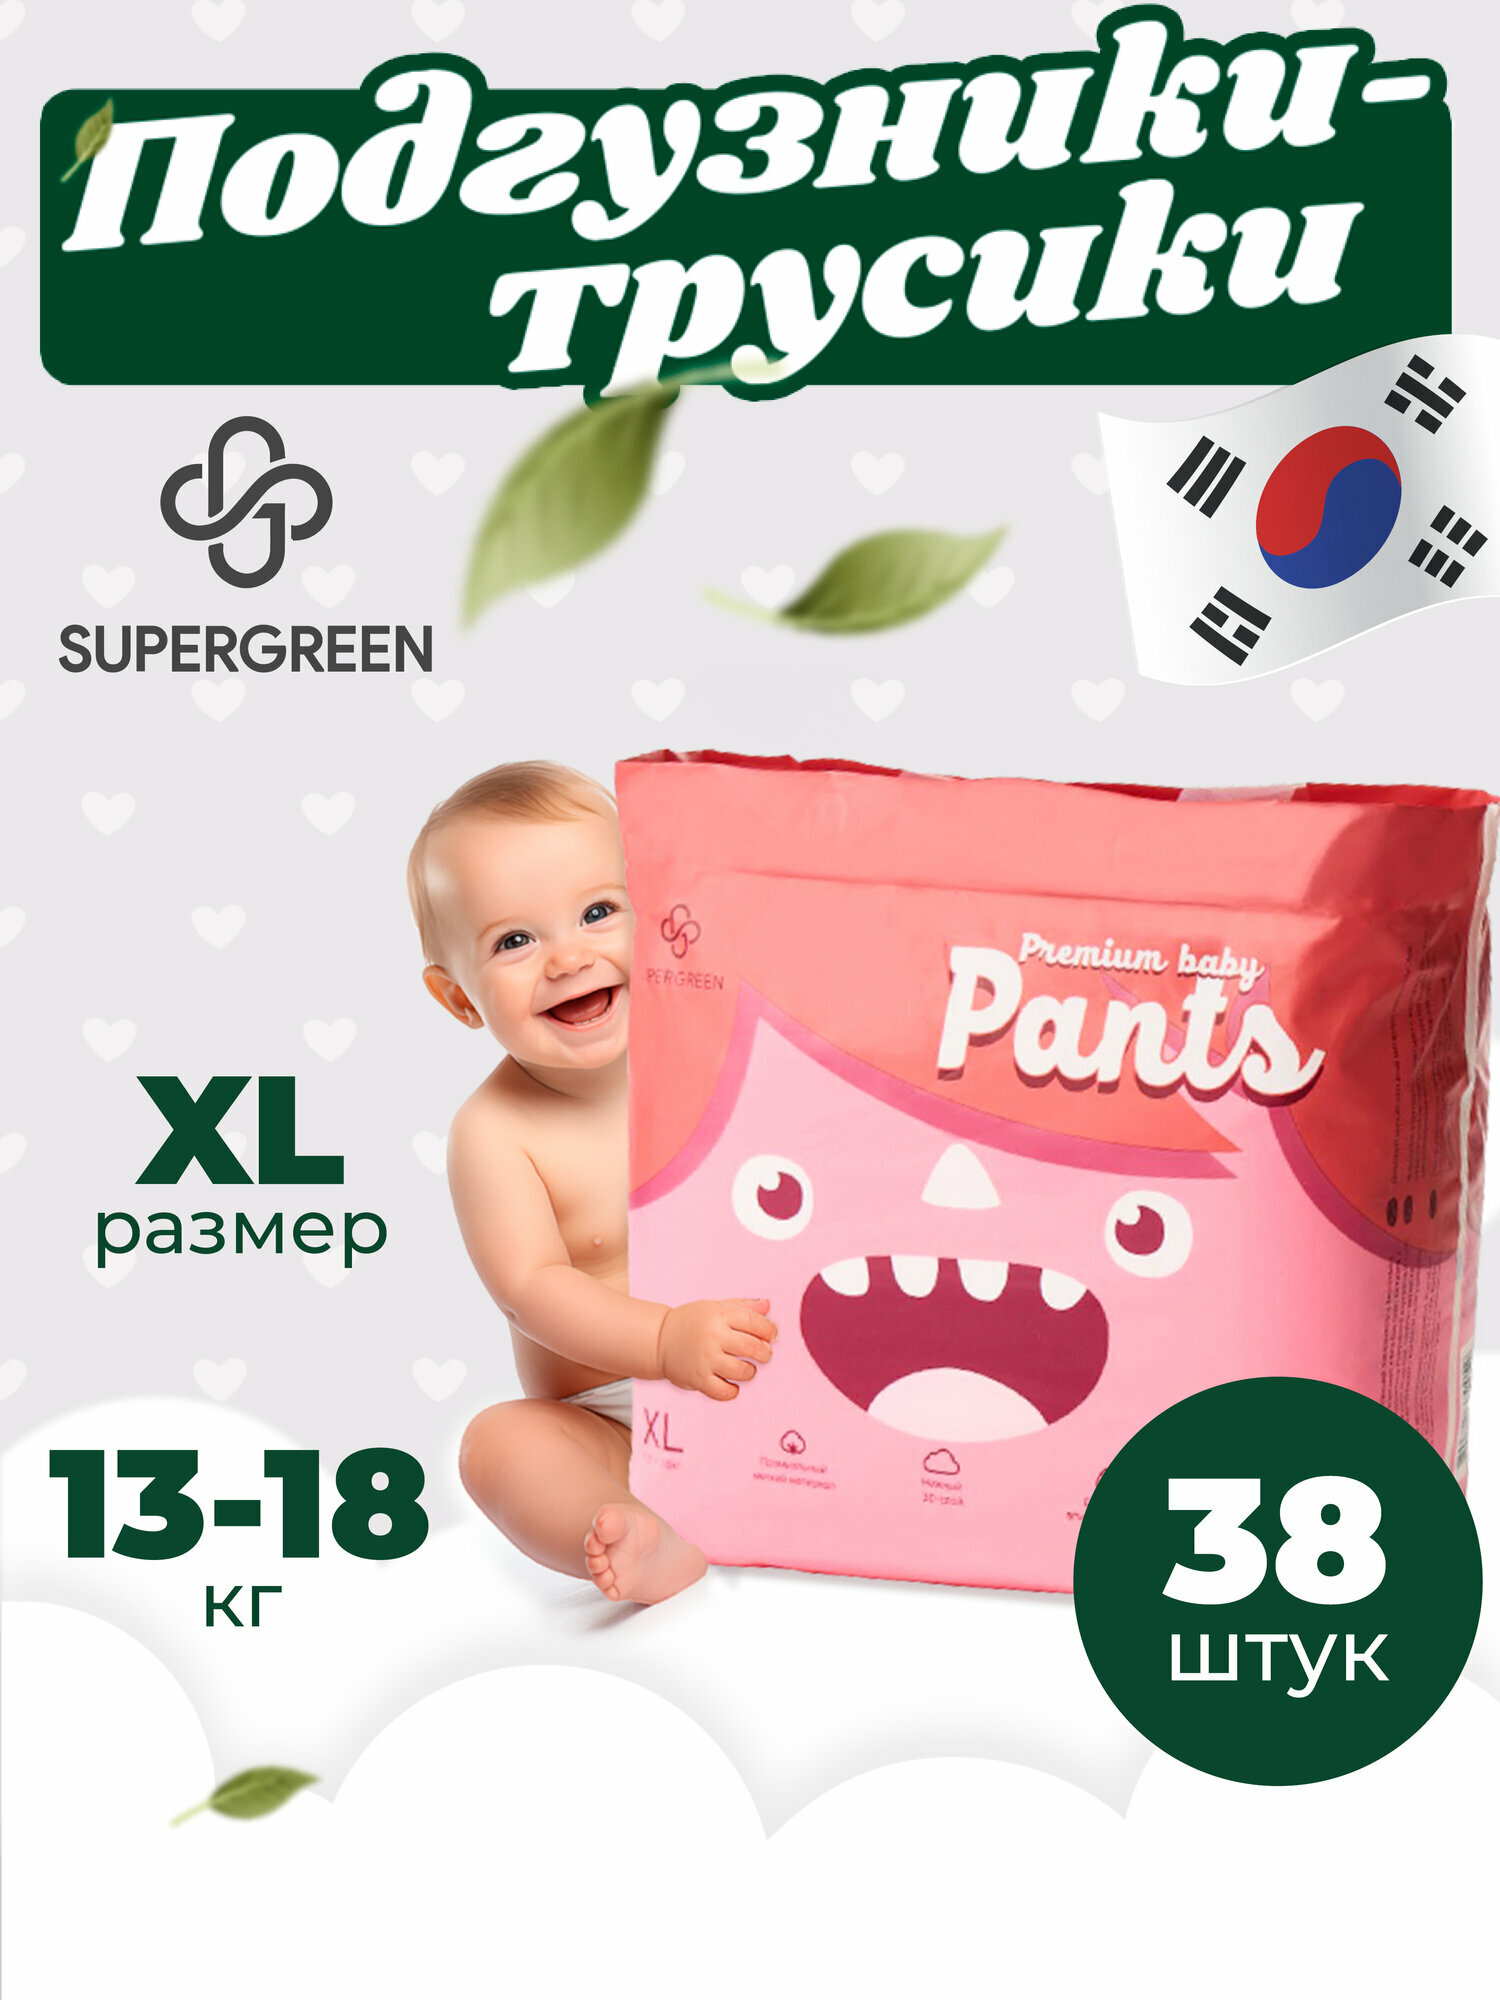 Supergreen подгузники трусики для малышей Premium baby Pants, размер XL (13-18 кг) 38 шт.